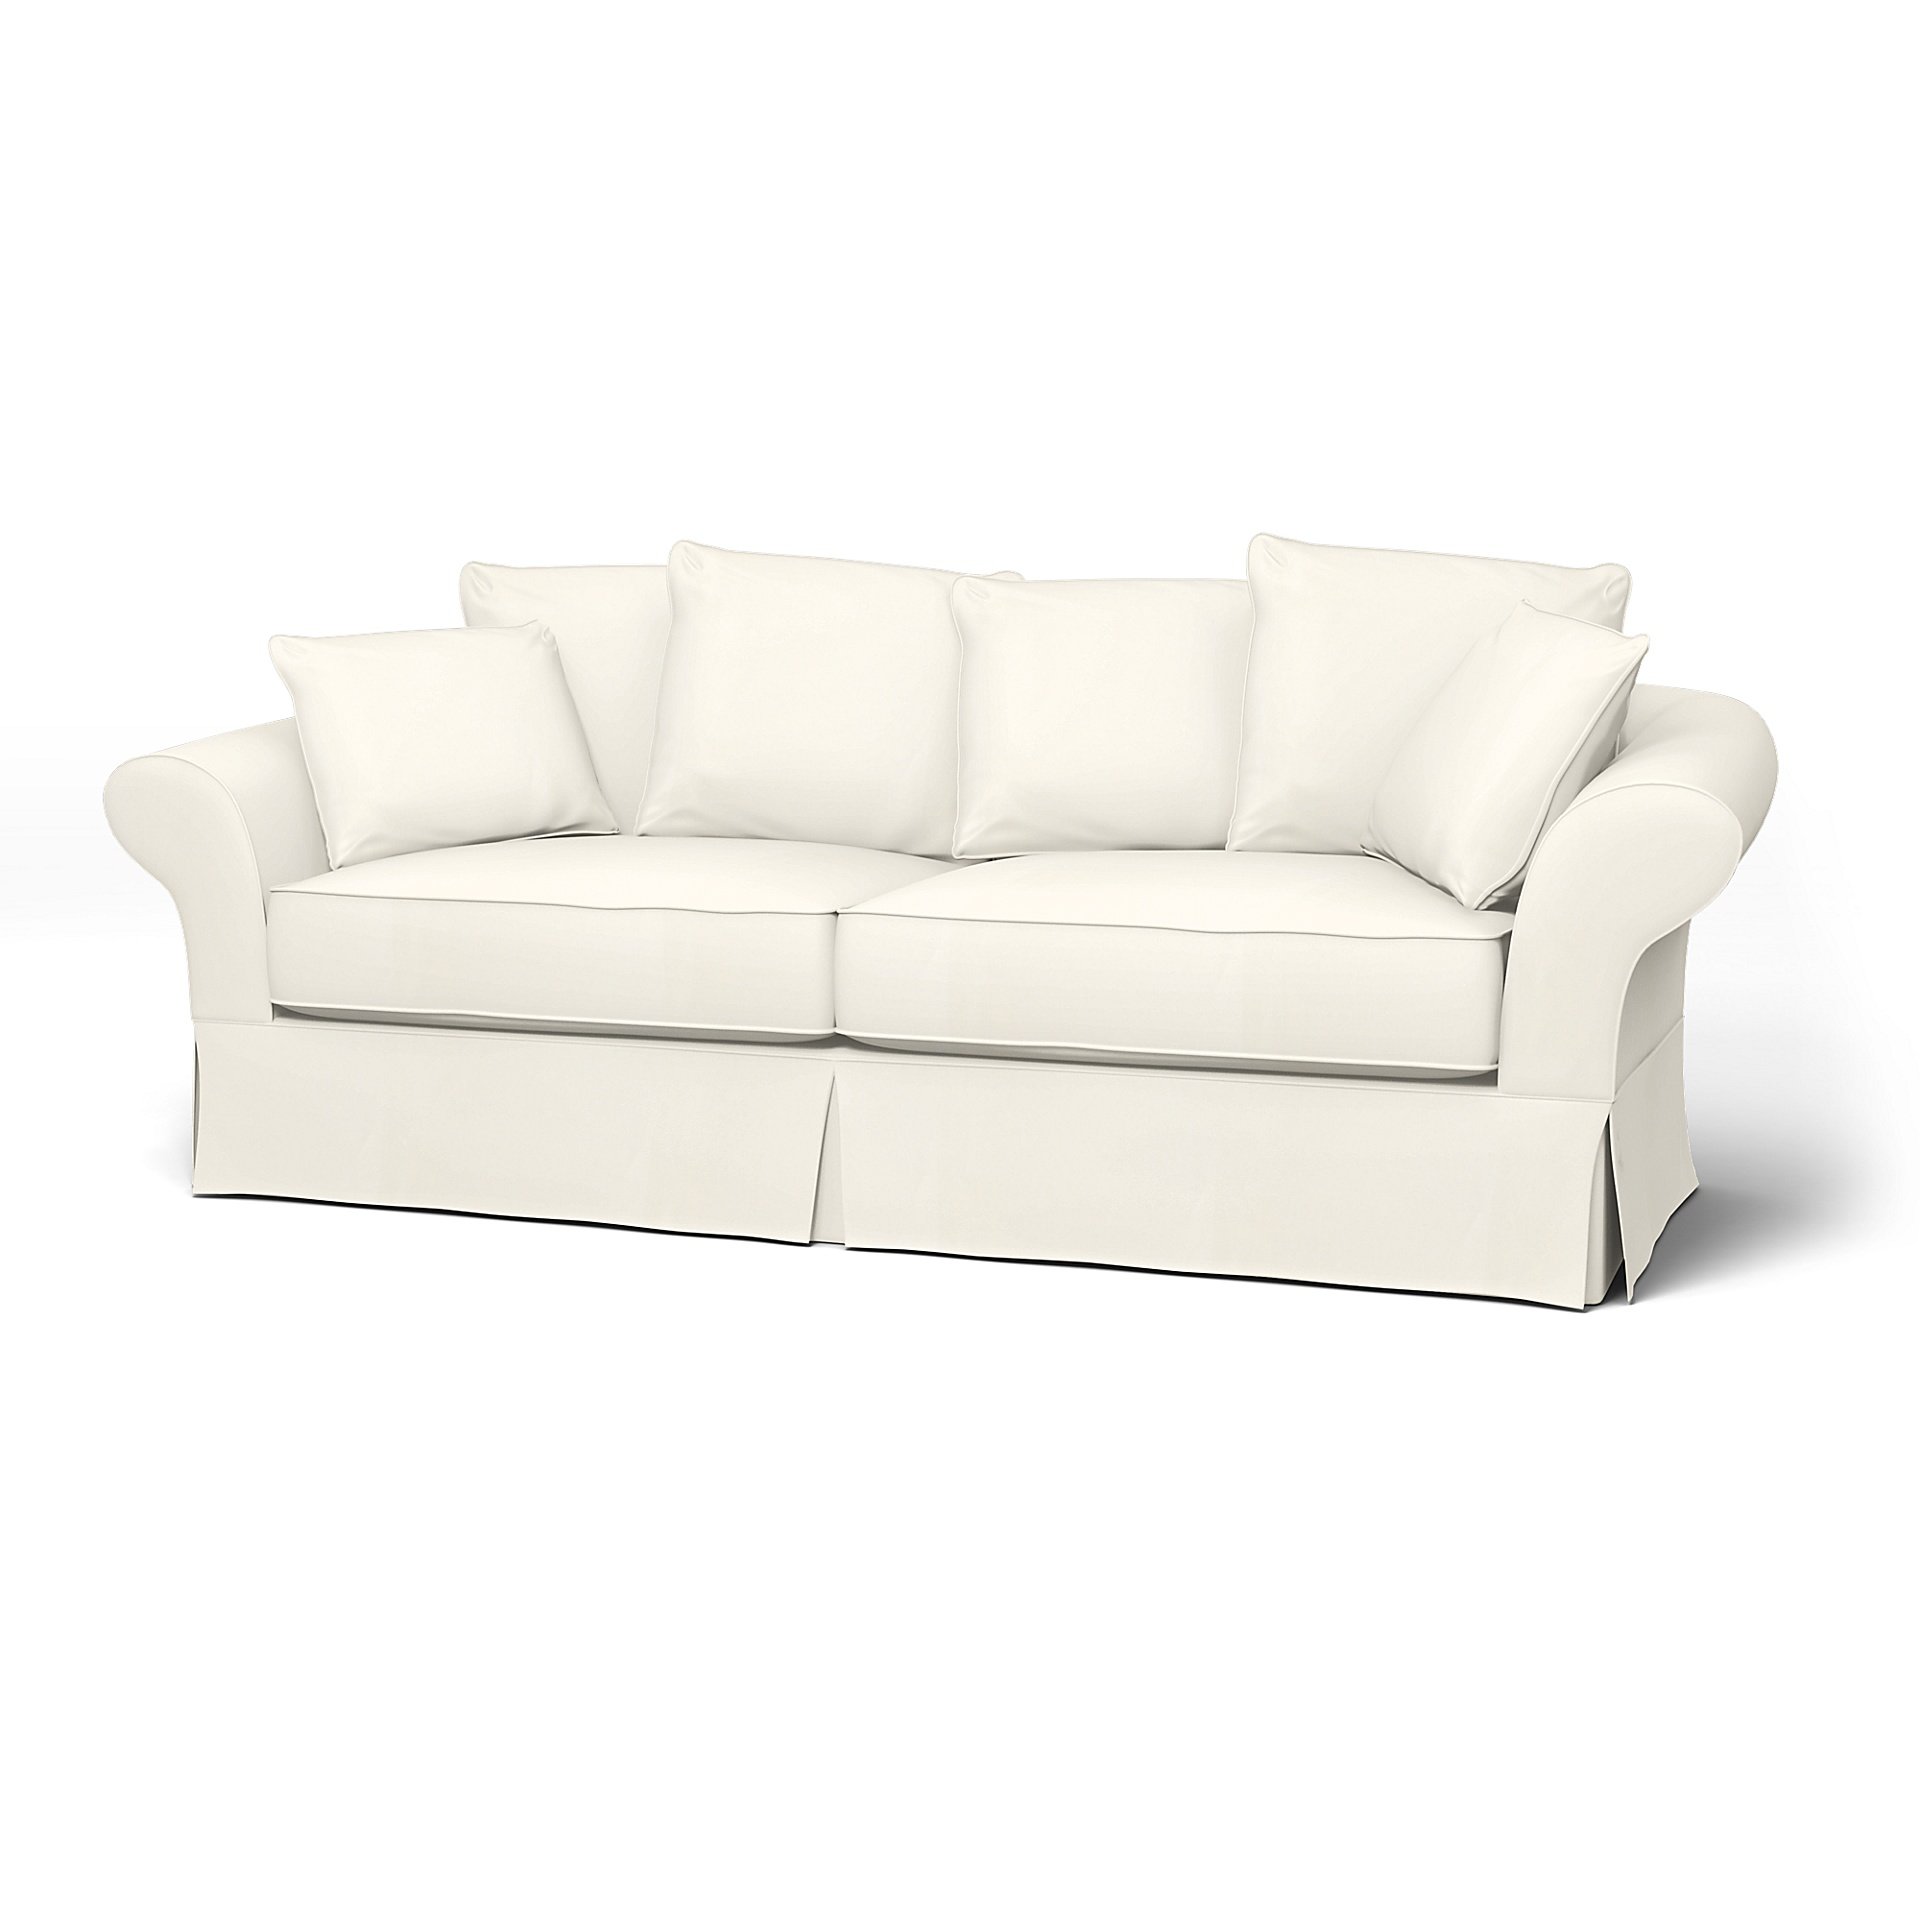 IKEA - Backamo 3 Seater Sofa Cover, Mole Brown, Boucle & Texture - Bemz